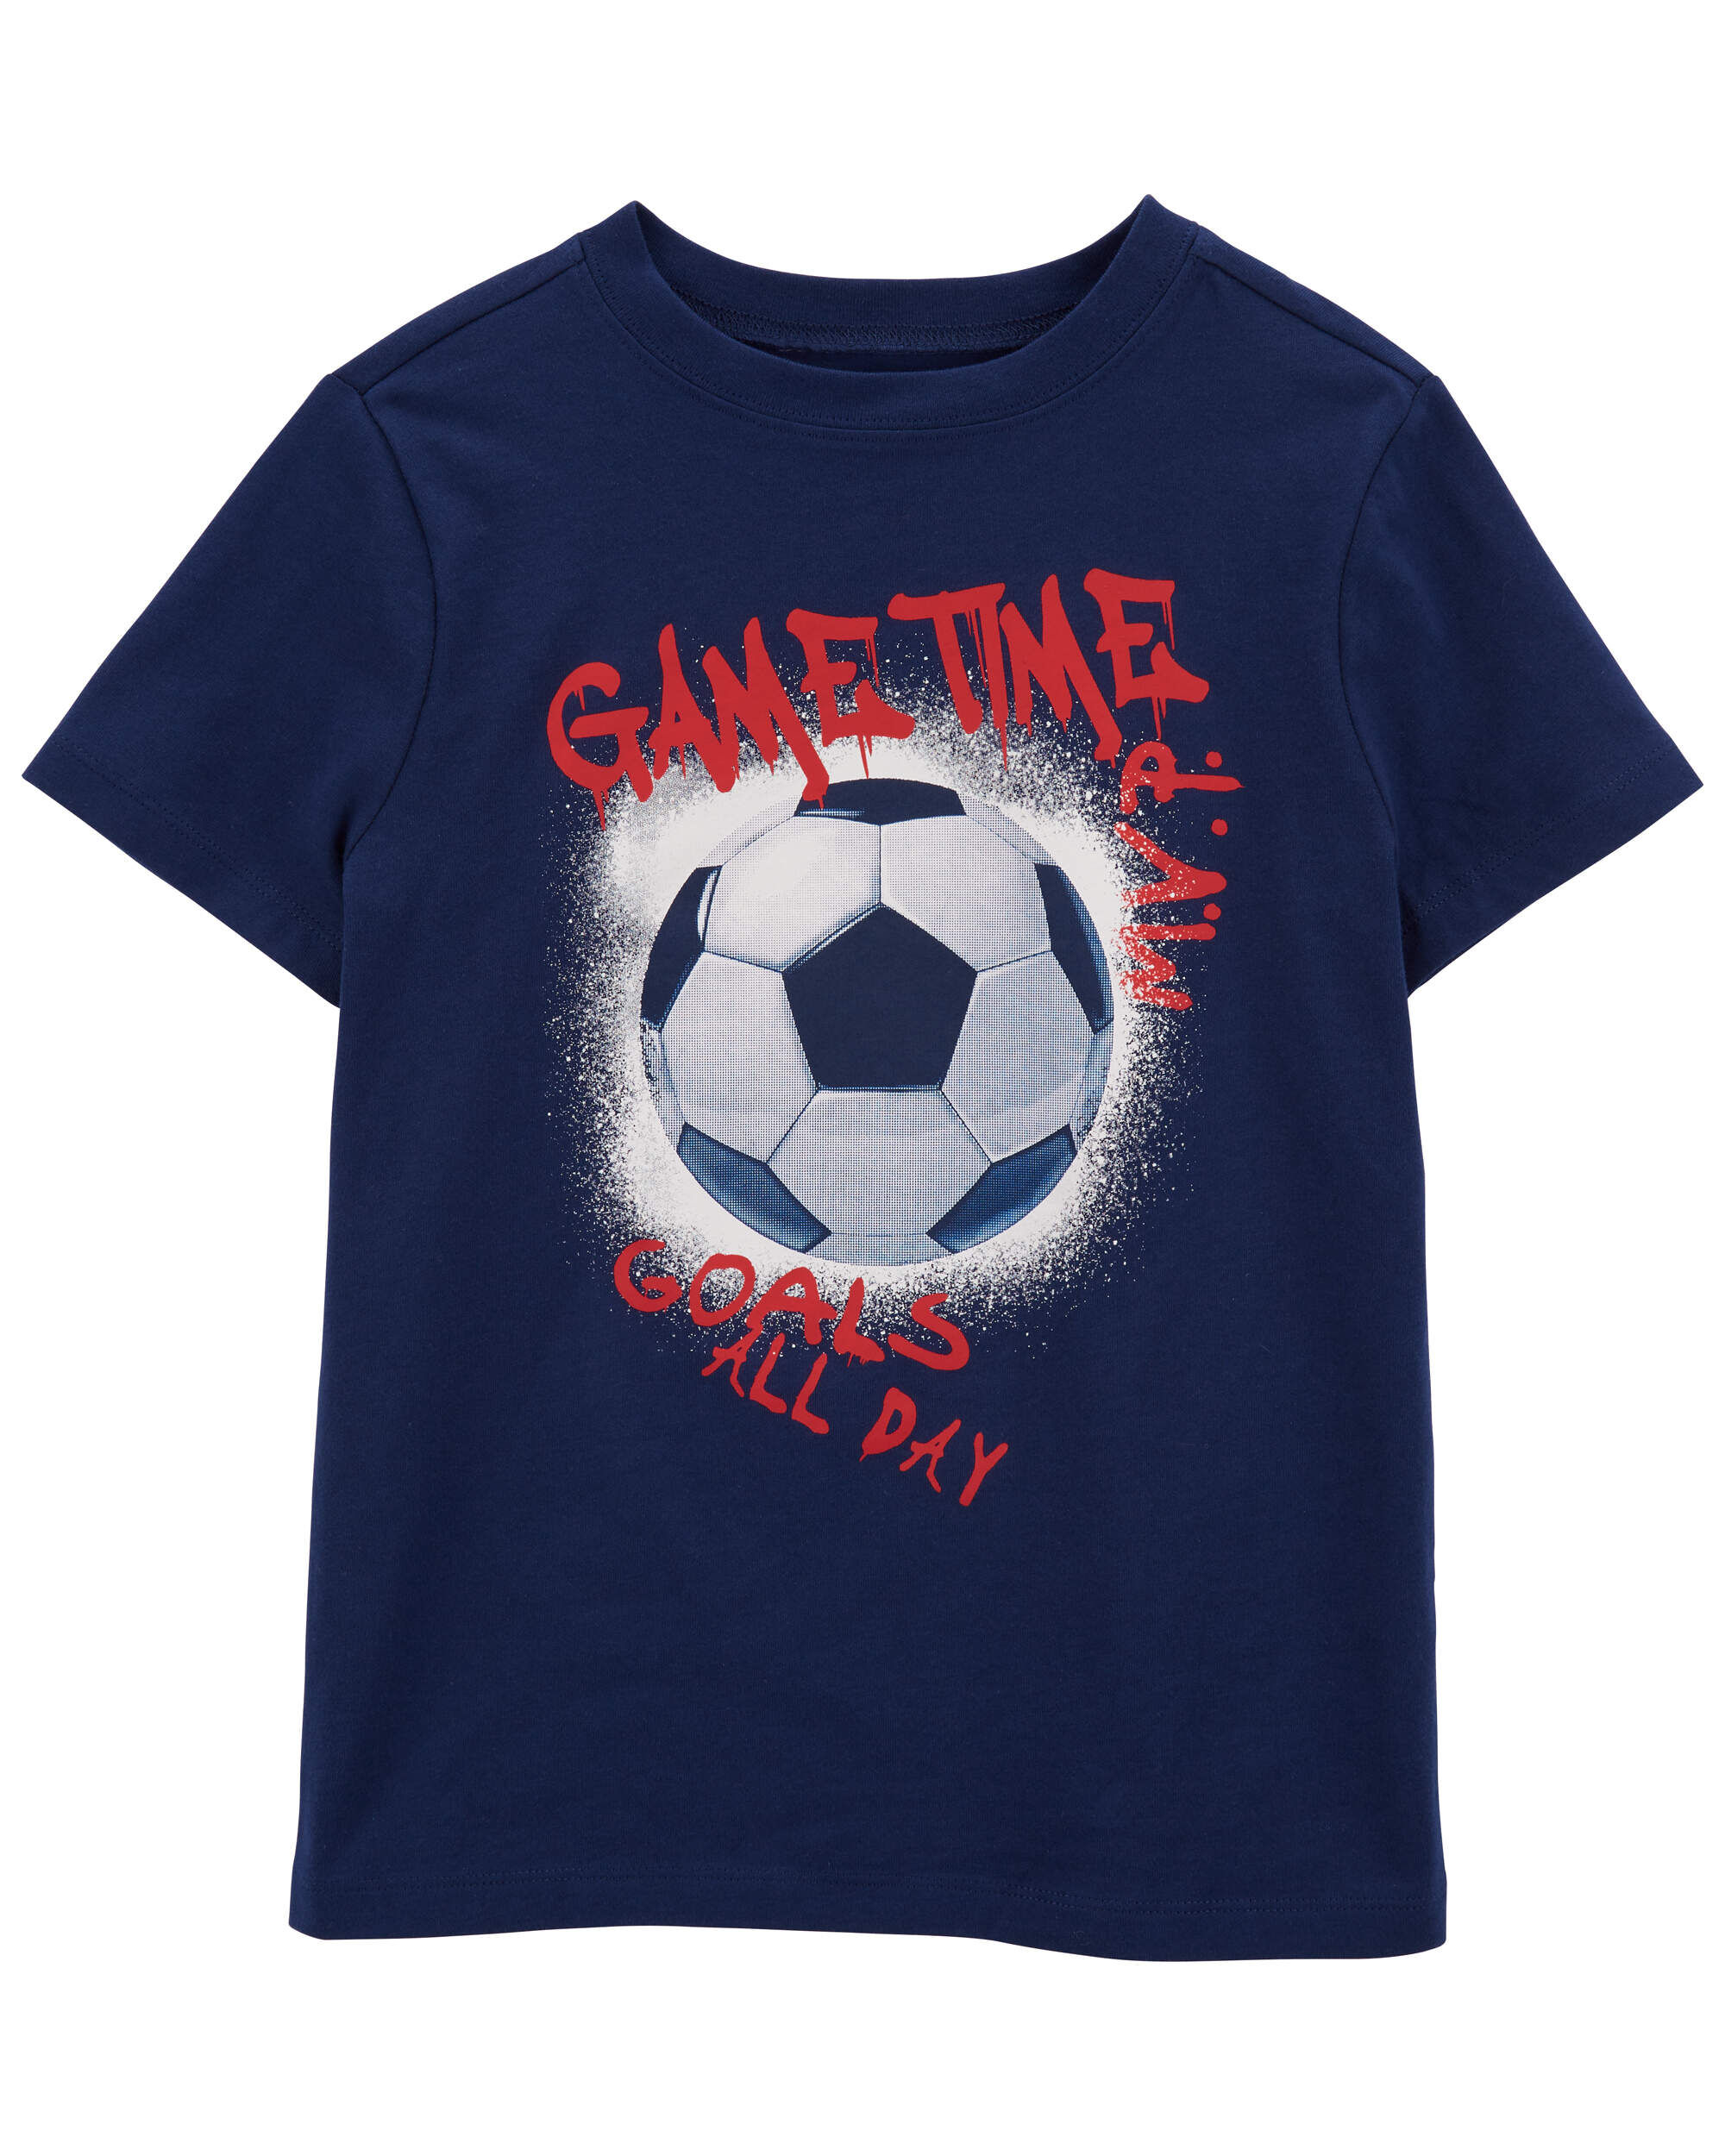 Детская футбольная футболка с графическим рисунком Carter's